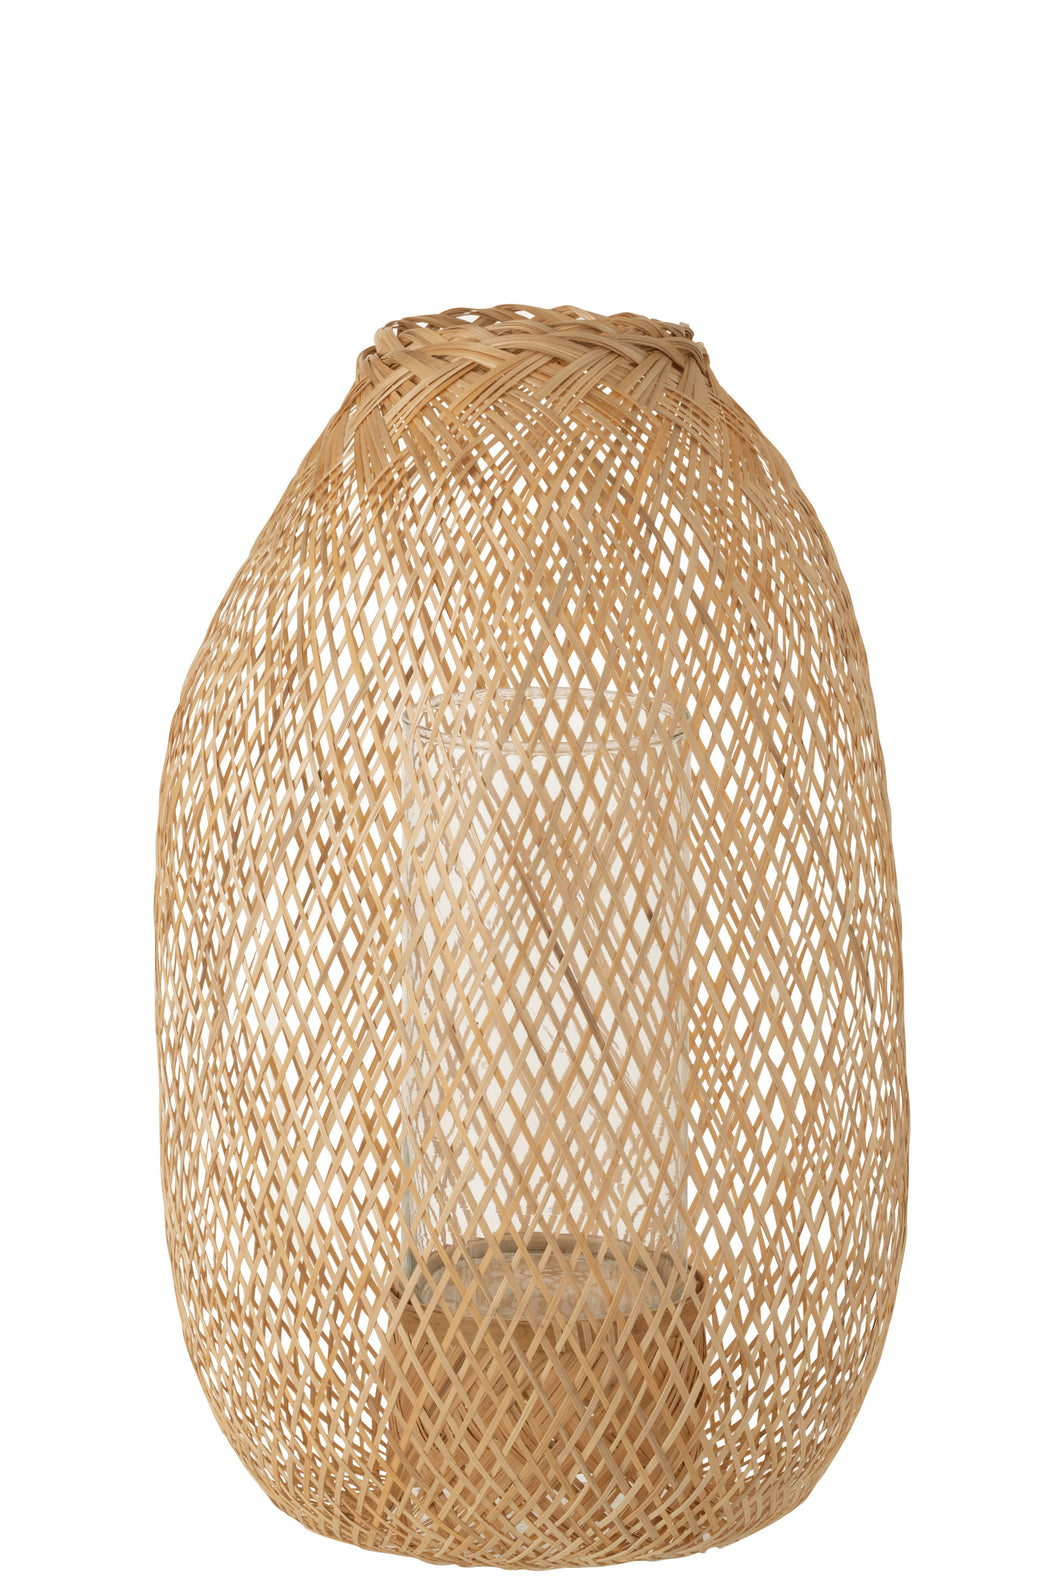 Lanterne Bambou naturel